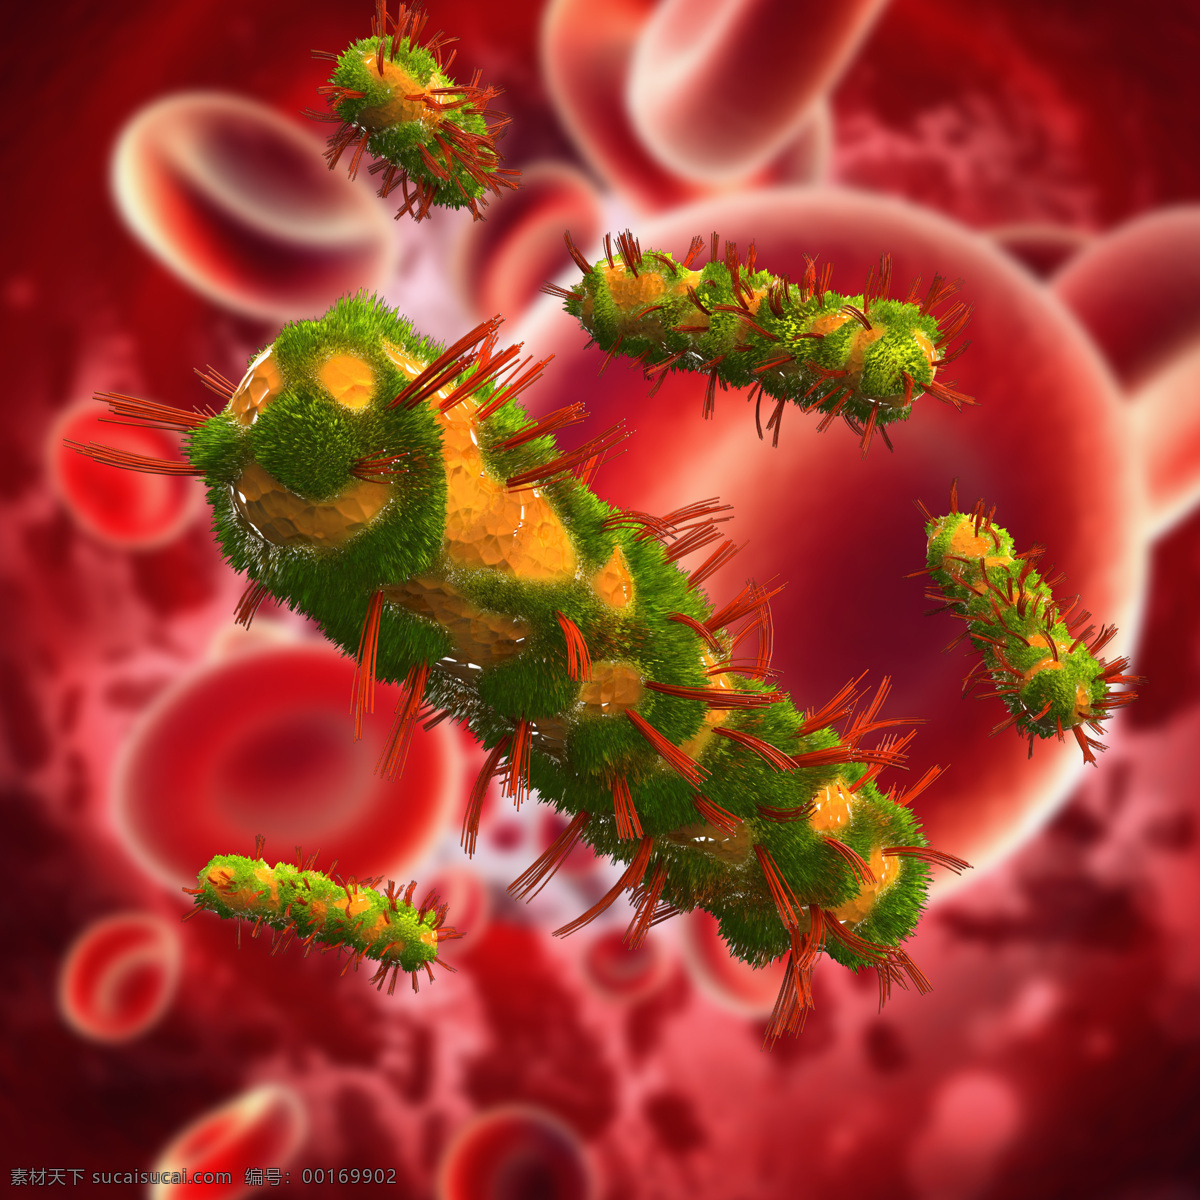 生长 血管 里 细菌 红细胞 血小板 超级病菌 细胞 身体细胞 生物 医疗护理 现代科技